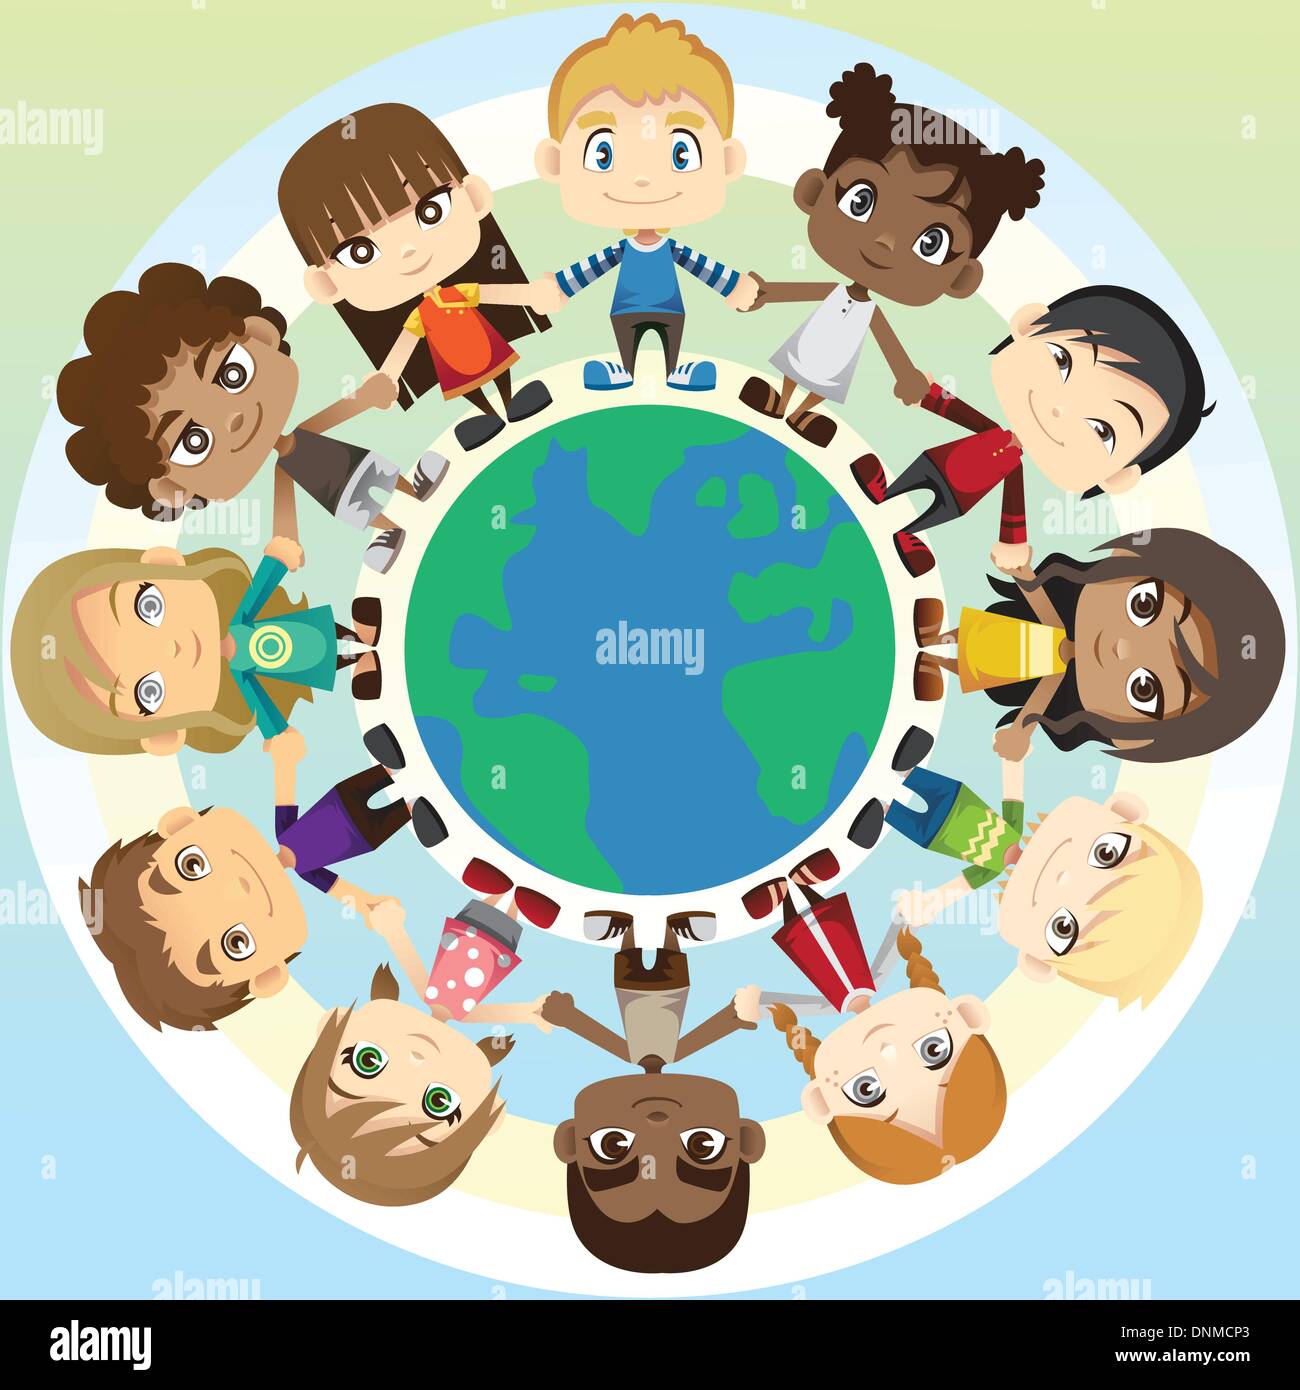 Eine Vektor-Illustration der Multi ethnischen Gruppe der Kinder Hand in Hand rund um den Globus Stock Vektor